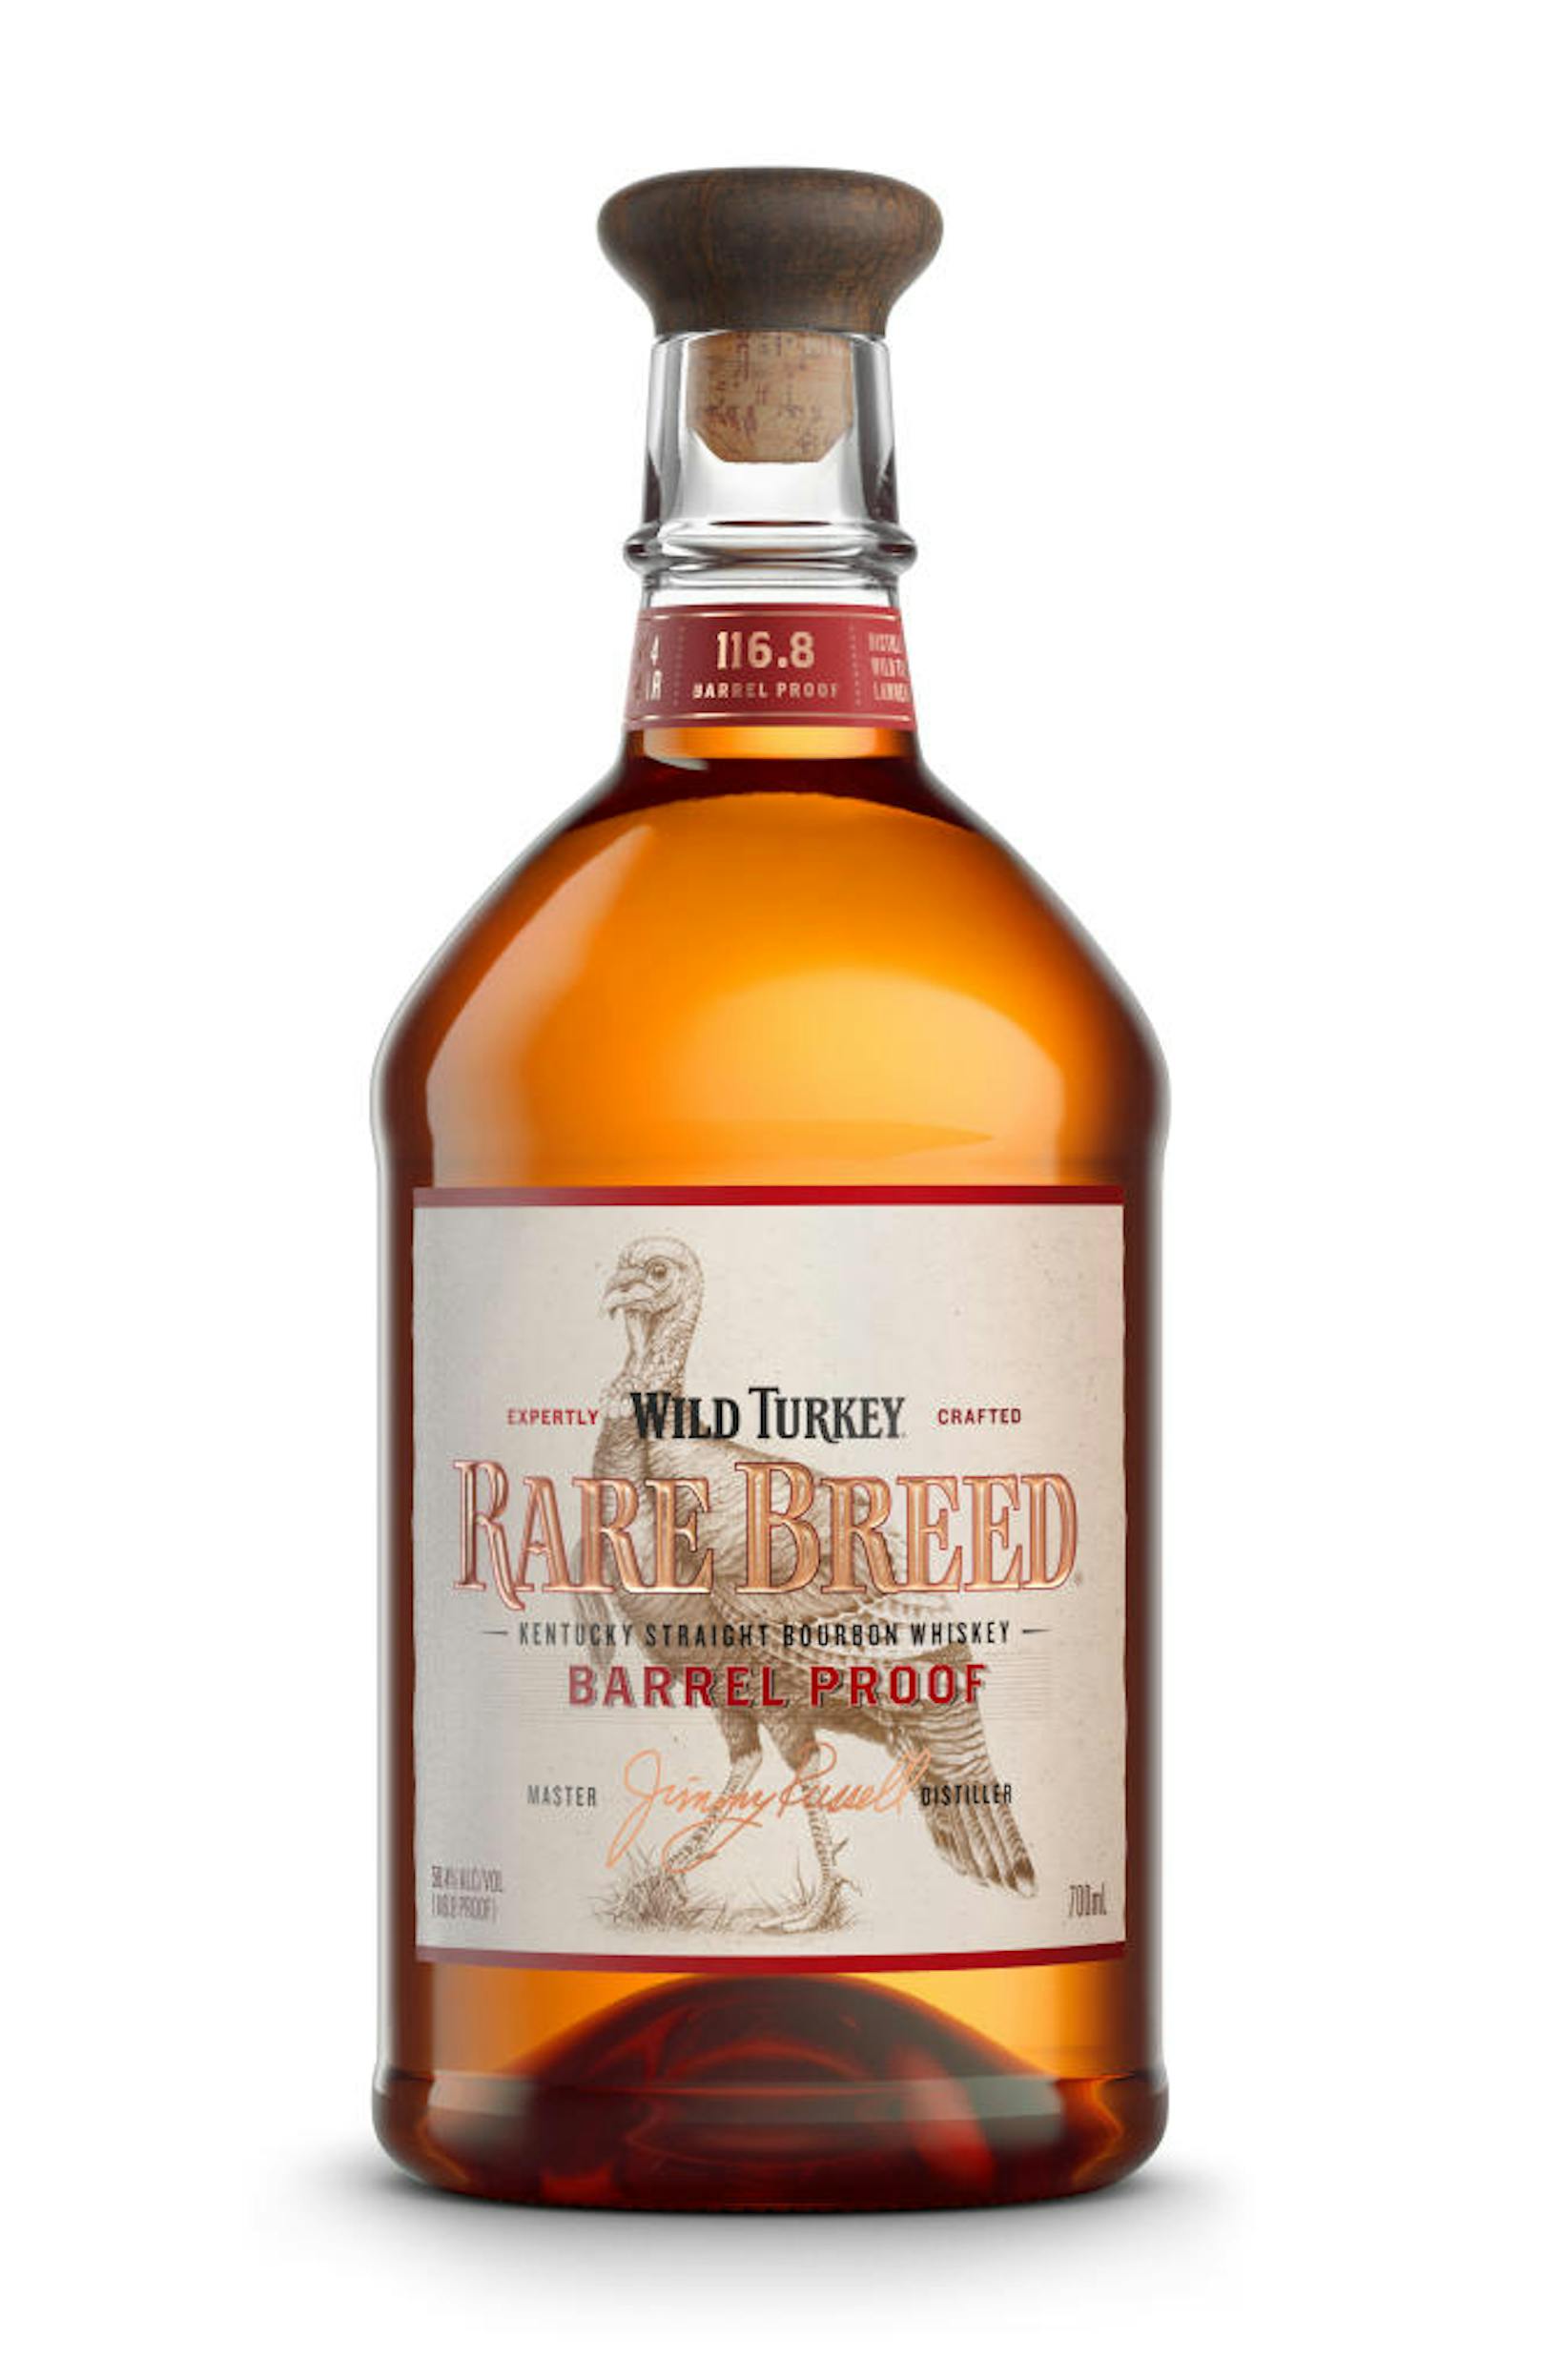 Der <b>"Rare Breed"</b> wird als purer Barrel-Proof Bourbon bezeichnet, da der Verschmelzung von sechs, acht und zwölf Jahre alten <b>Wild Turkey</b> Beständen nach dem Destillationsvorgang kein Wasser hinzugesetzt wird, um den Alkoholgehalt zu reduzieren. Dadurch kann sein unvergleichlich intensives Aroma garantiert werden. Erhältlich ist der Bourbon Whiskey um ca.<b> 30 Euro</b> bei Merkur Hoher Markt, Meinl am Graben oder im gut sortiertem Getränkefachhandel.